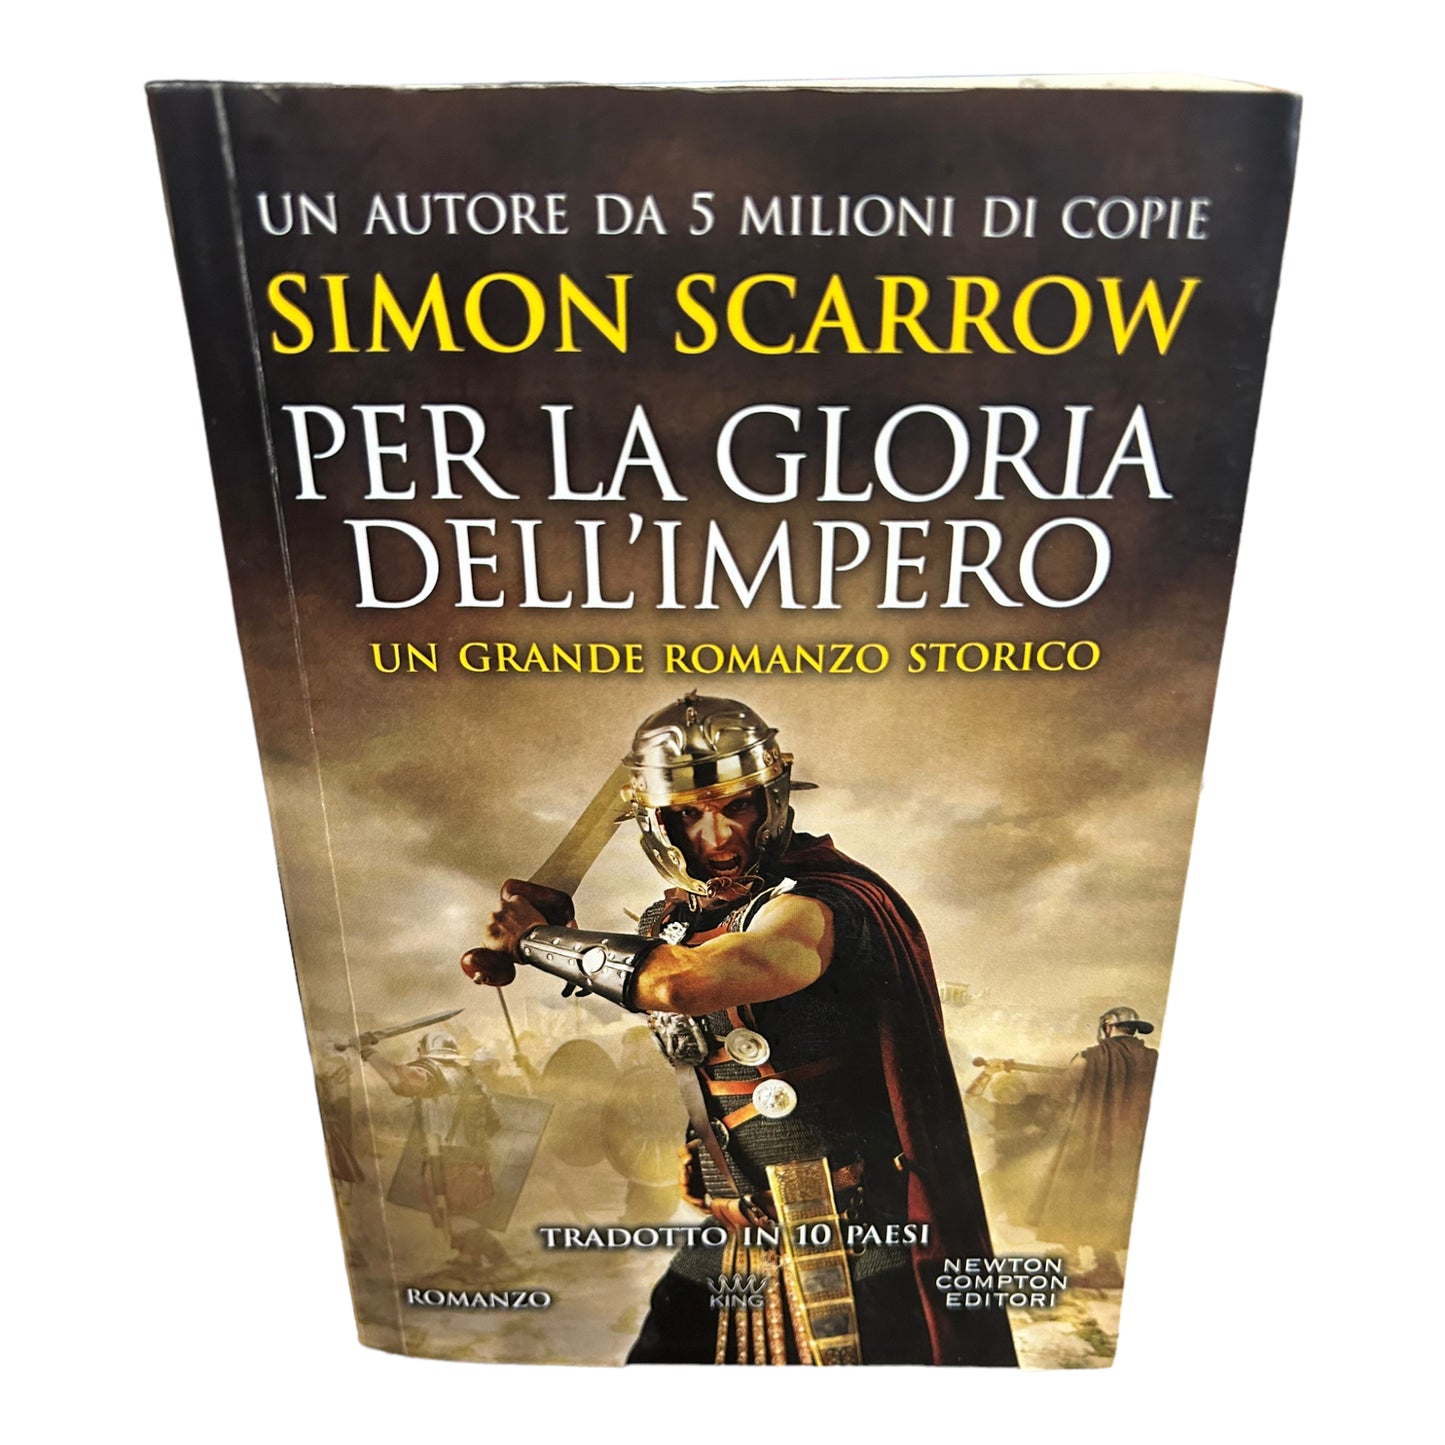 Simon Scarrow - Per la gloria dell’impero